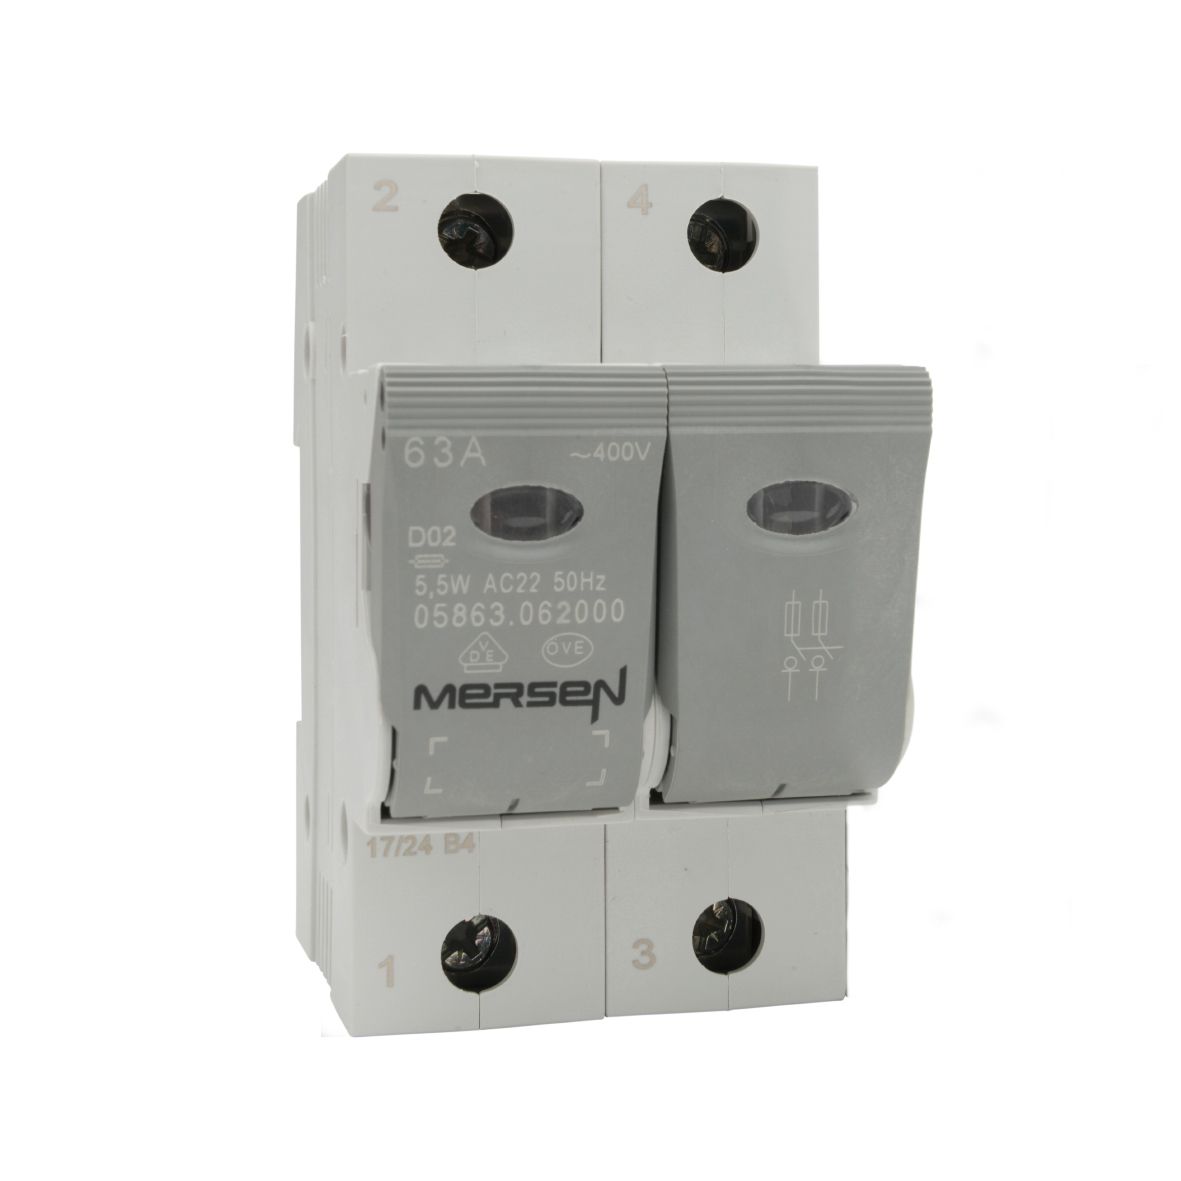 J1012606 - LINOCUR D02 switch disconnector for DIN rail, 230/400VAC 65VDC/pole 63A, 2-pole